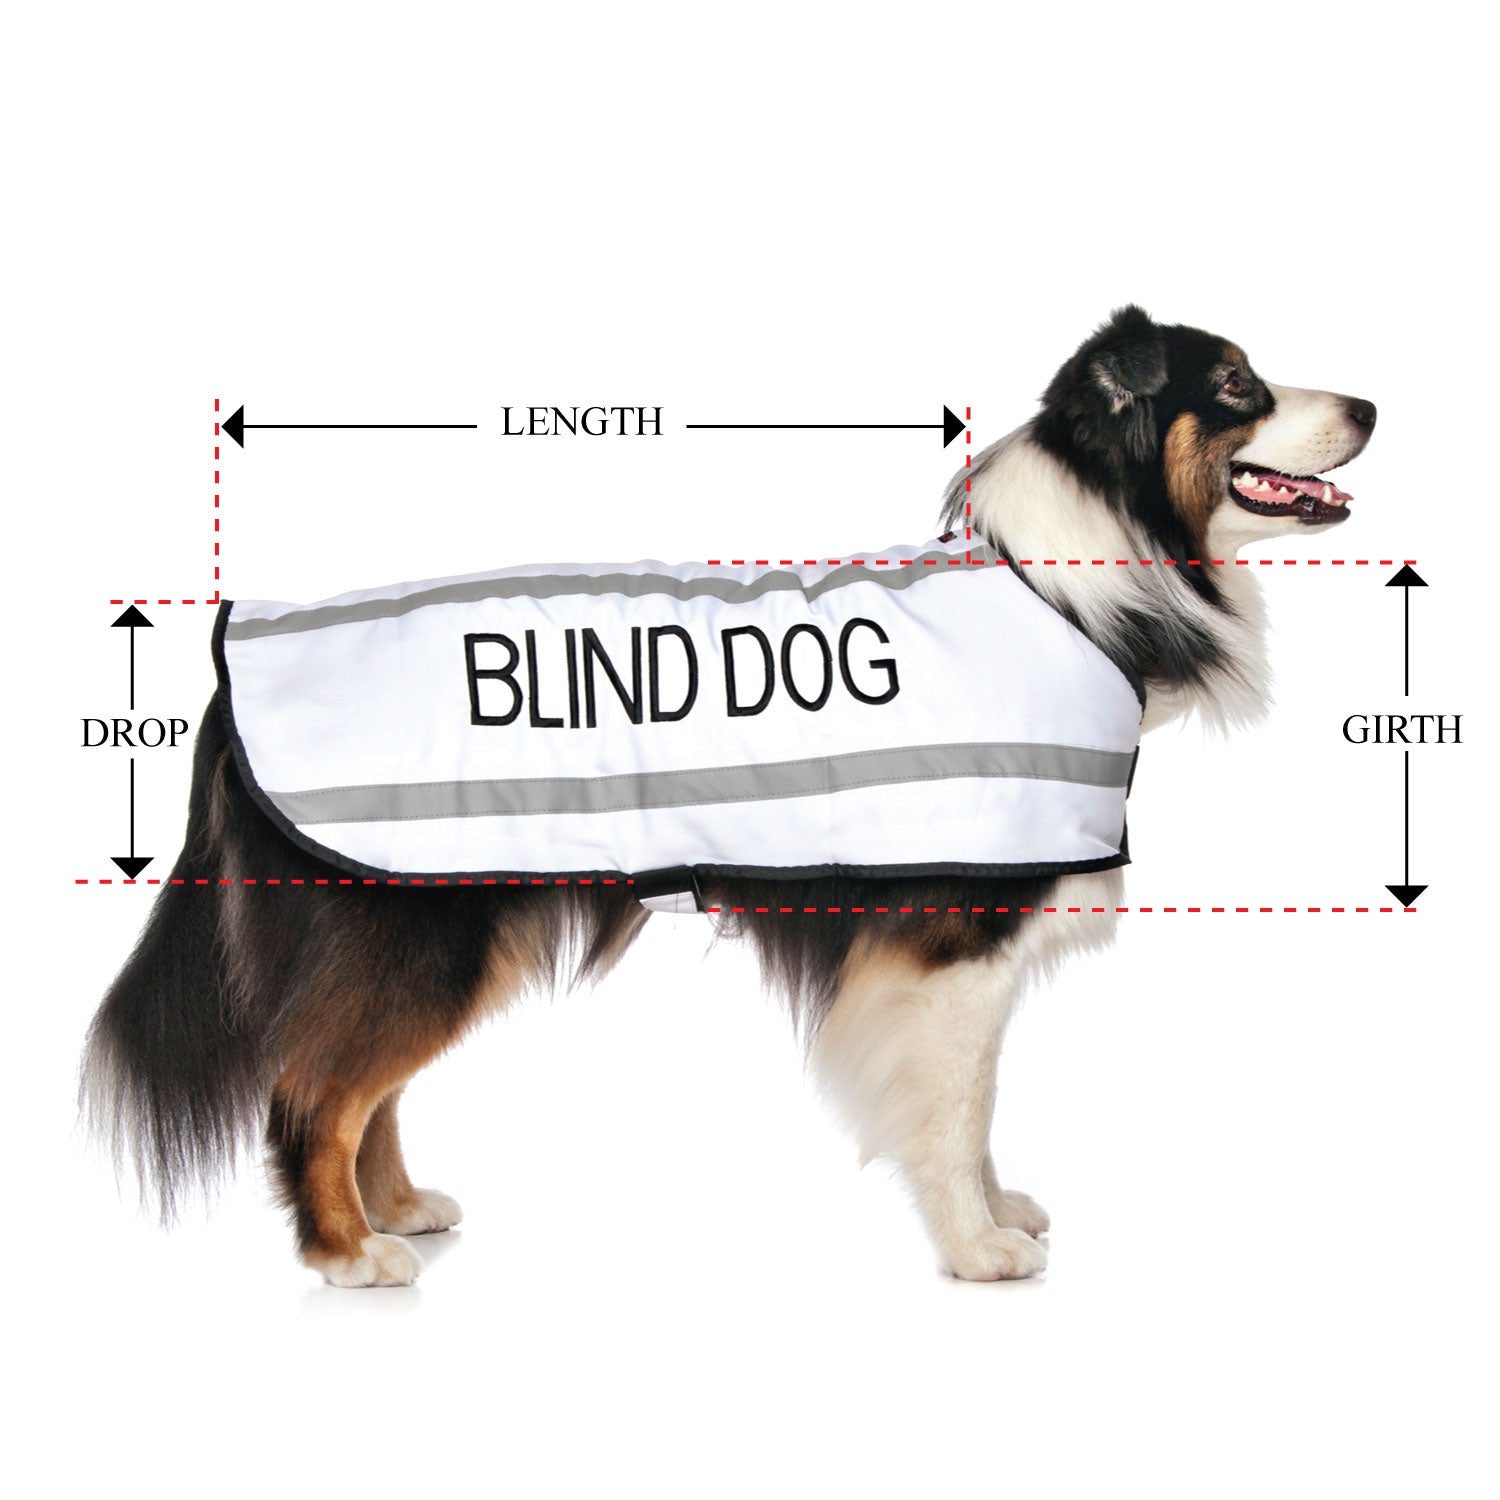 BLIND DOG - Large Coat